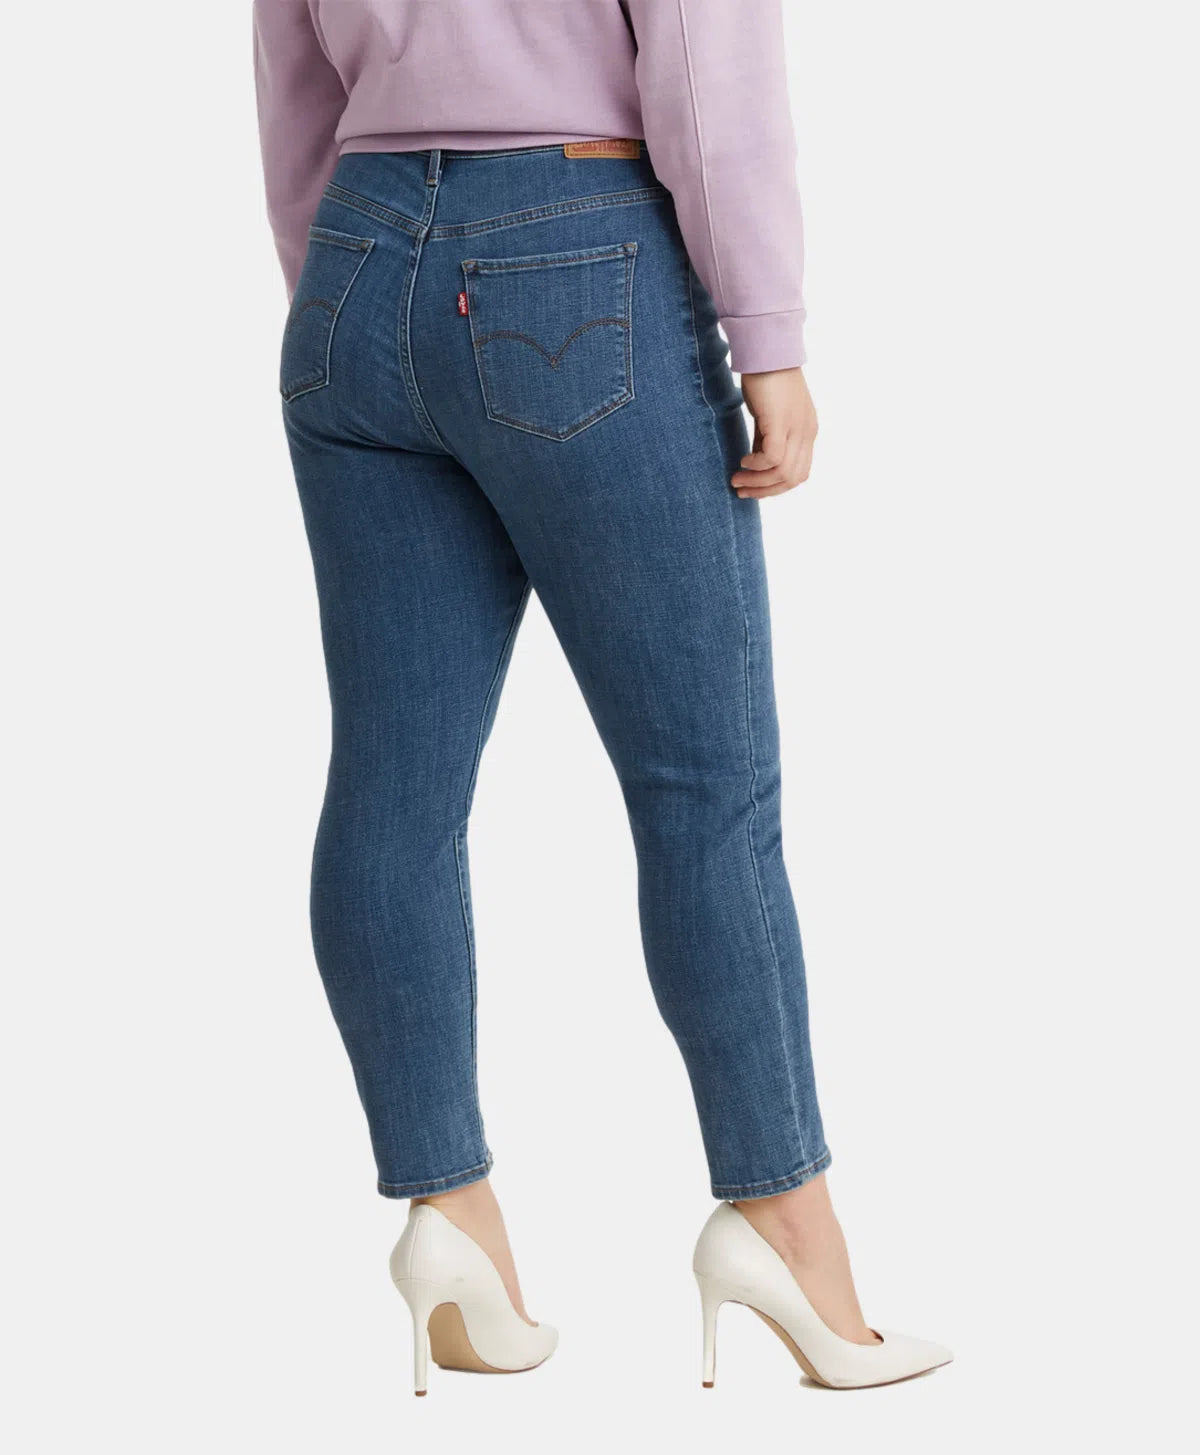 Jeans Levi's 721 filiforme Taille plus bleu pour femme